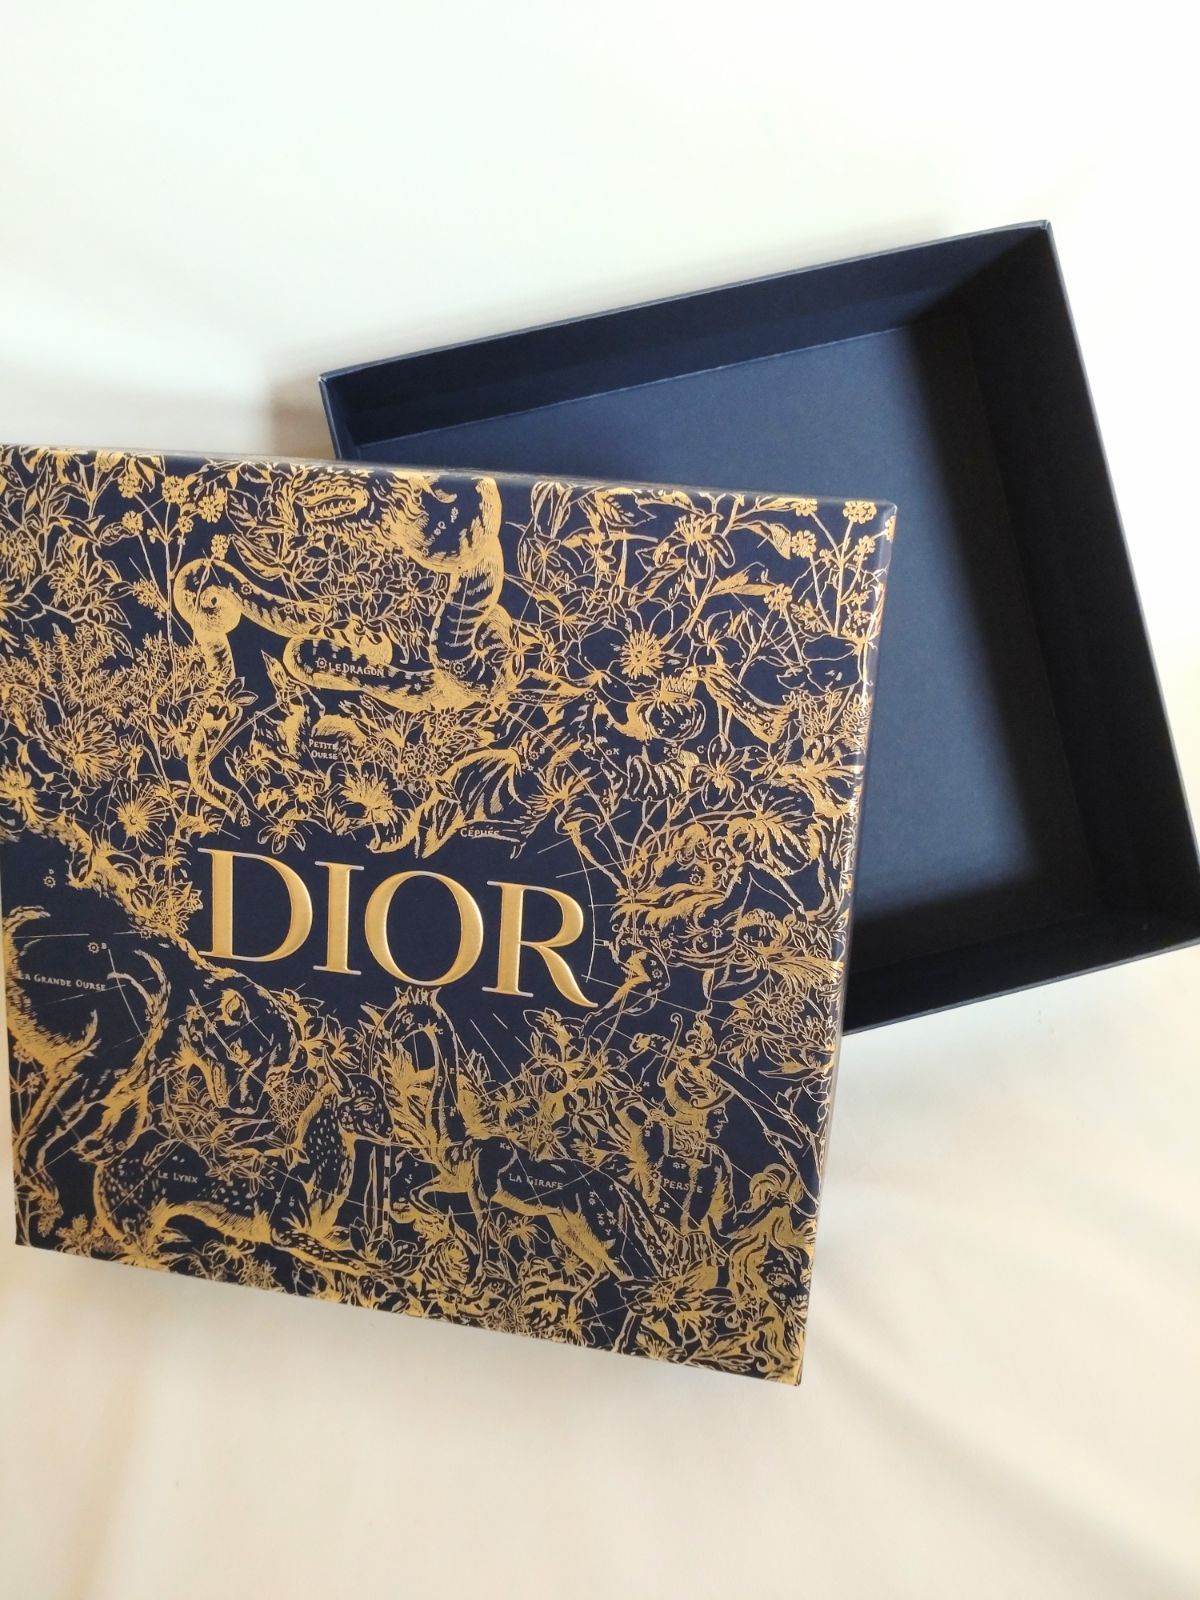 ランキングや新製品 Dior 空箱 drenriquejmariani.com